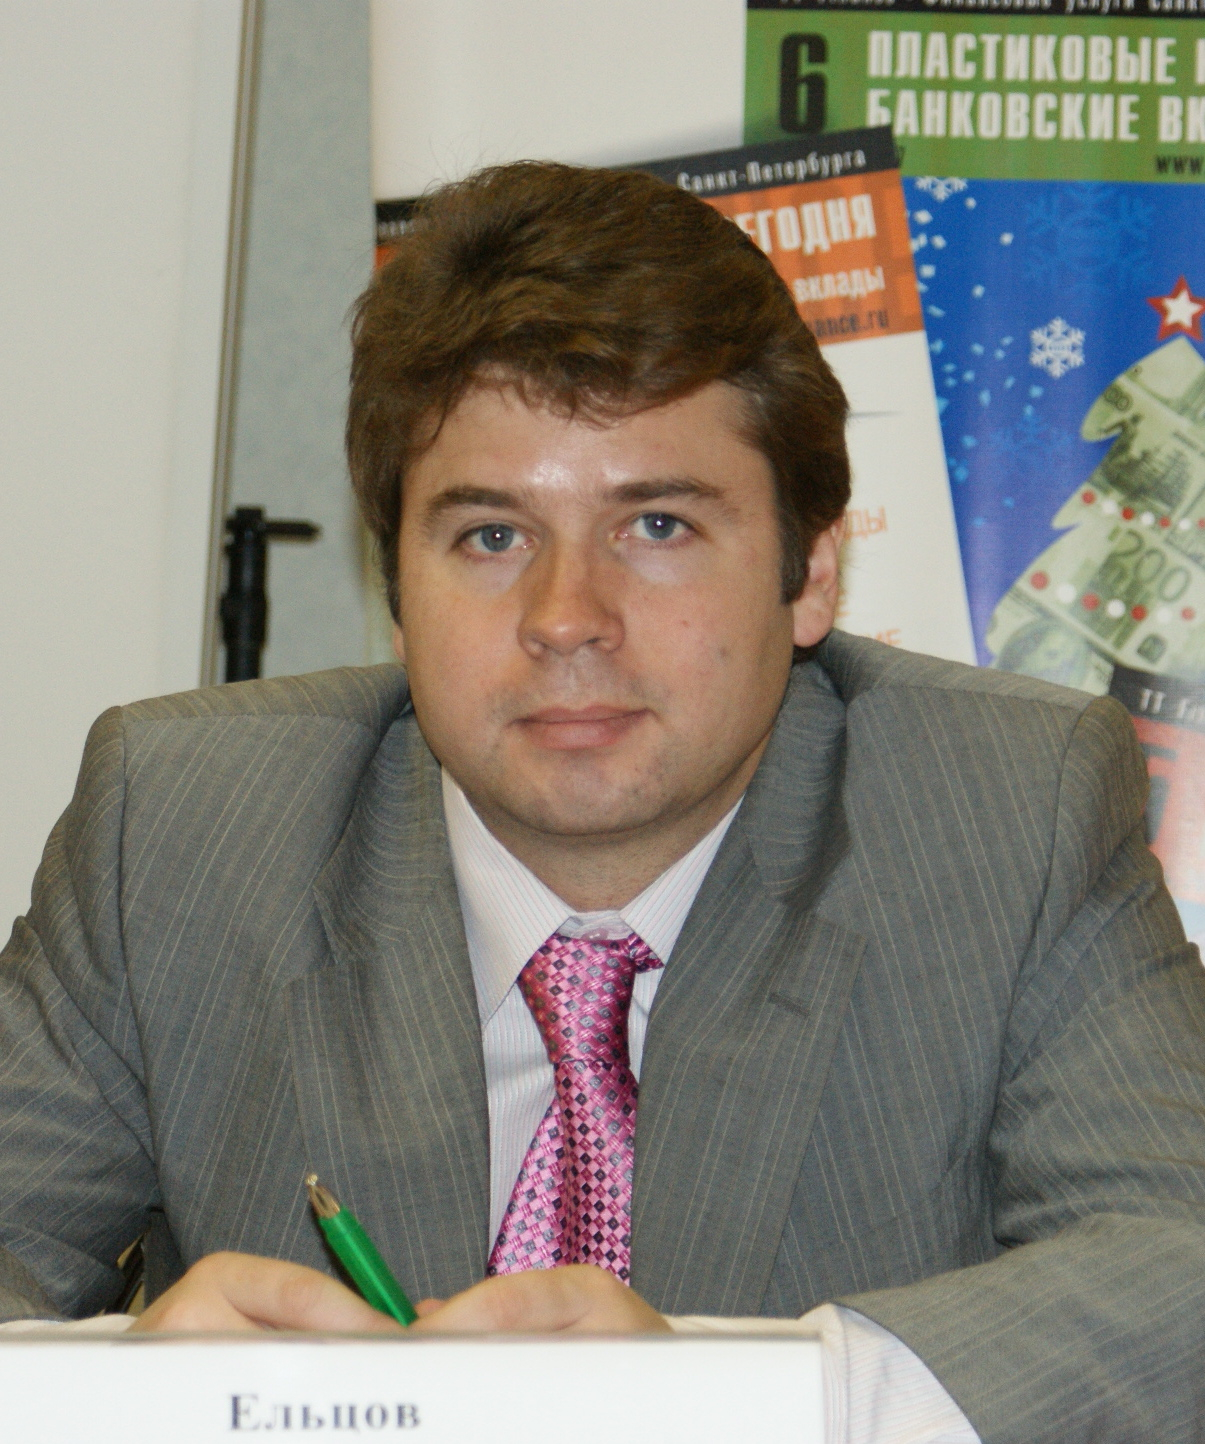 Ельцов Максим Иванович, генеральный директор 1-го ипотечного агентства